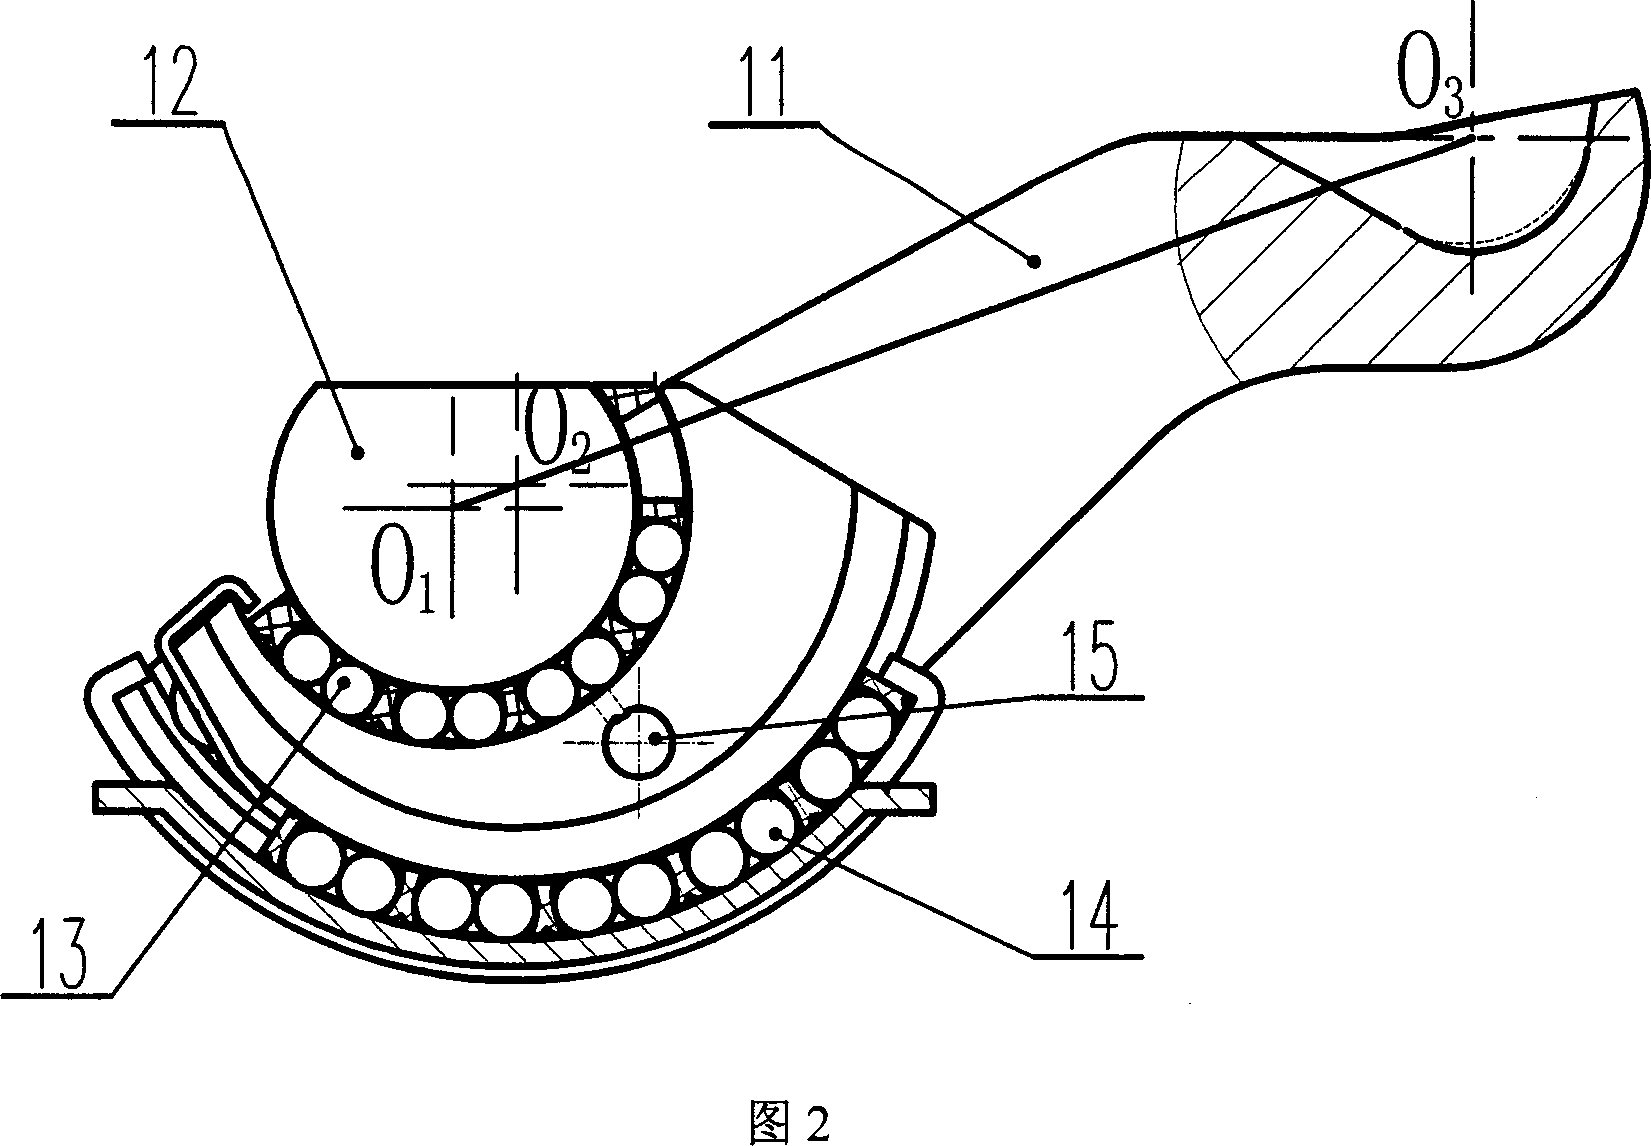 Floating tong type bipushing rod pneumatic disk brake based on rectangular torsional spring single dicrection clutch